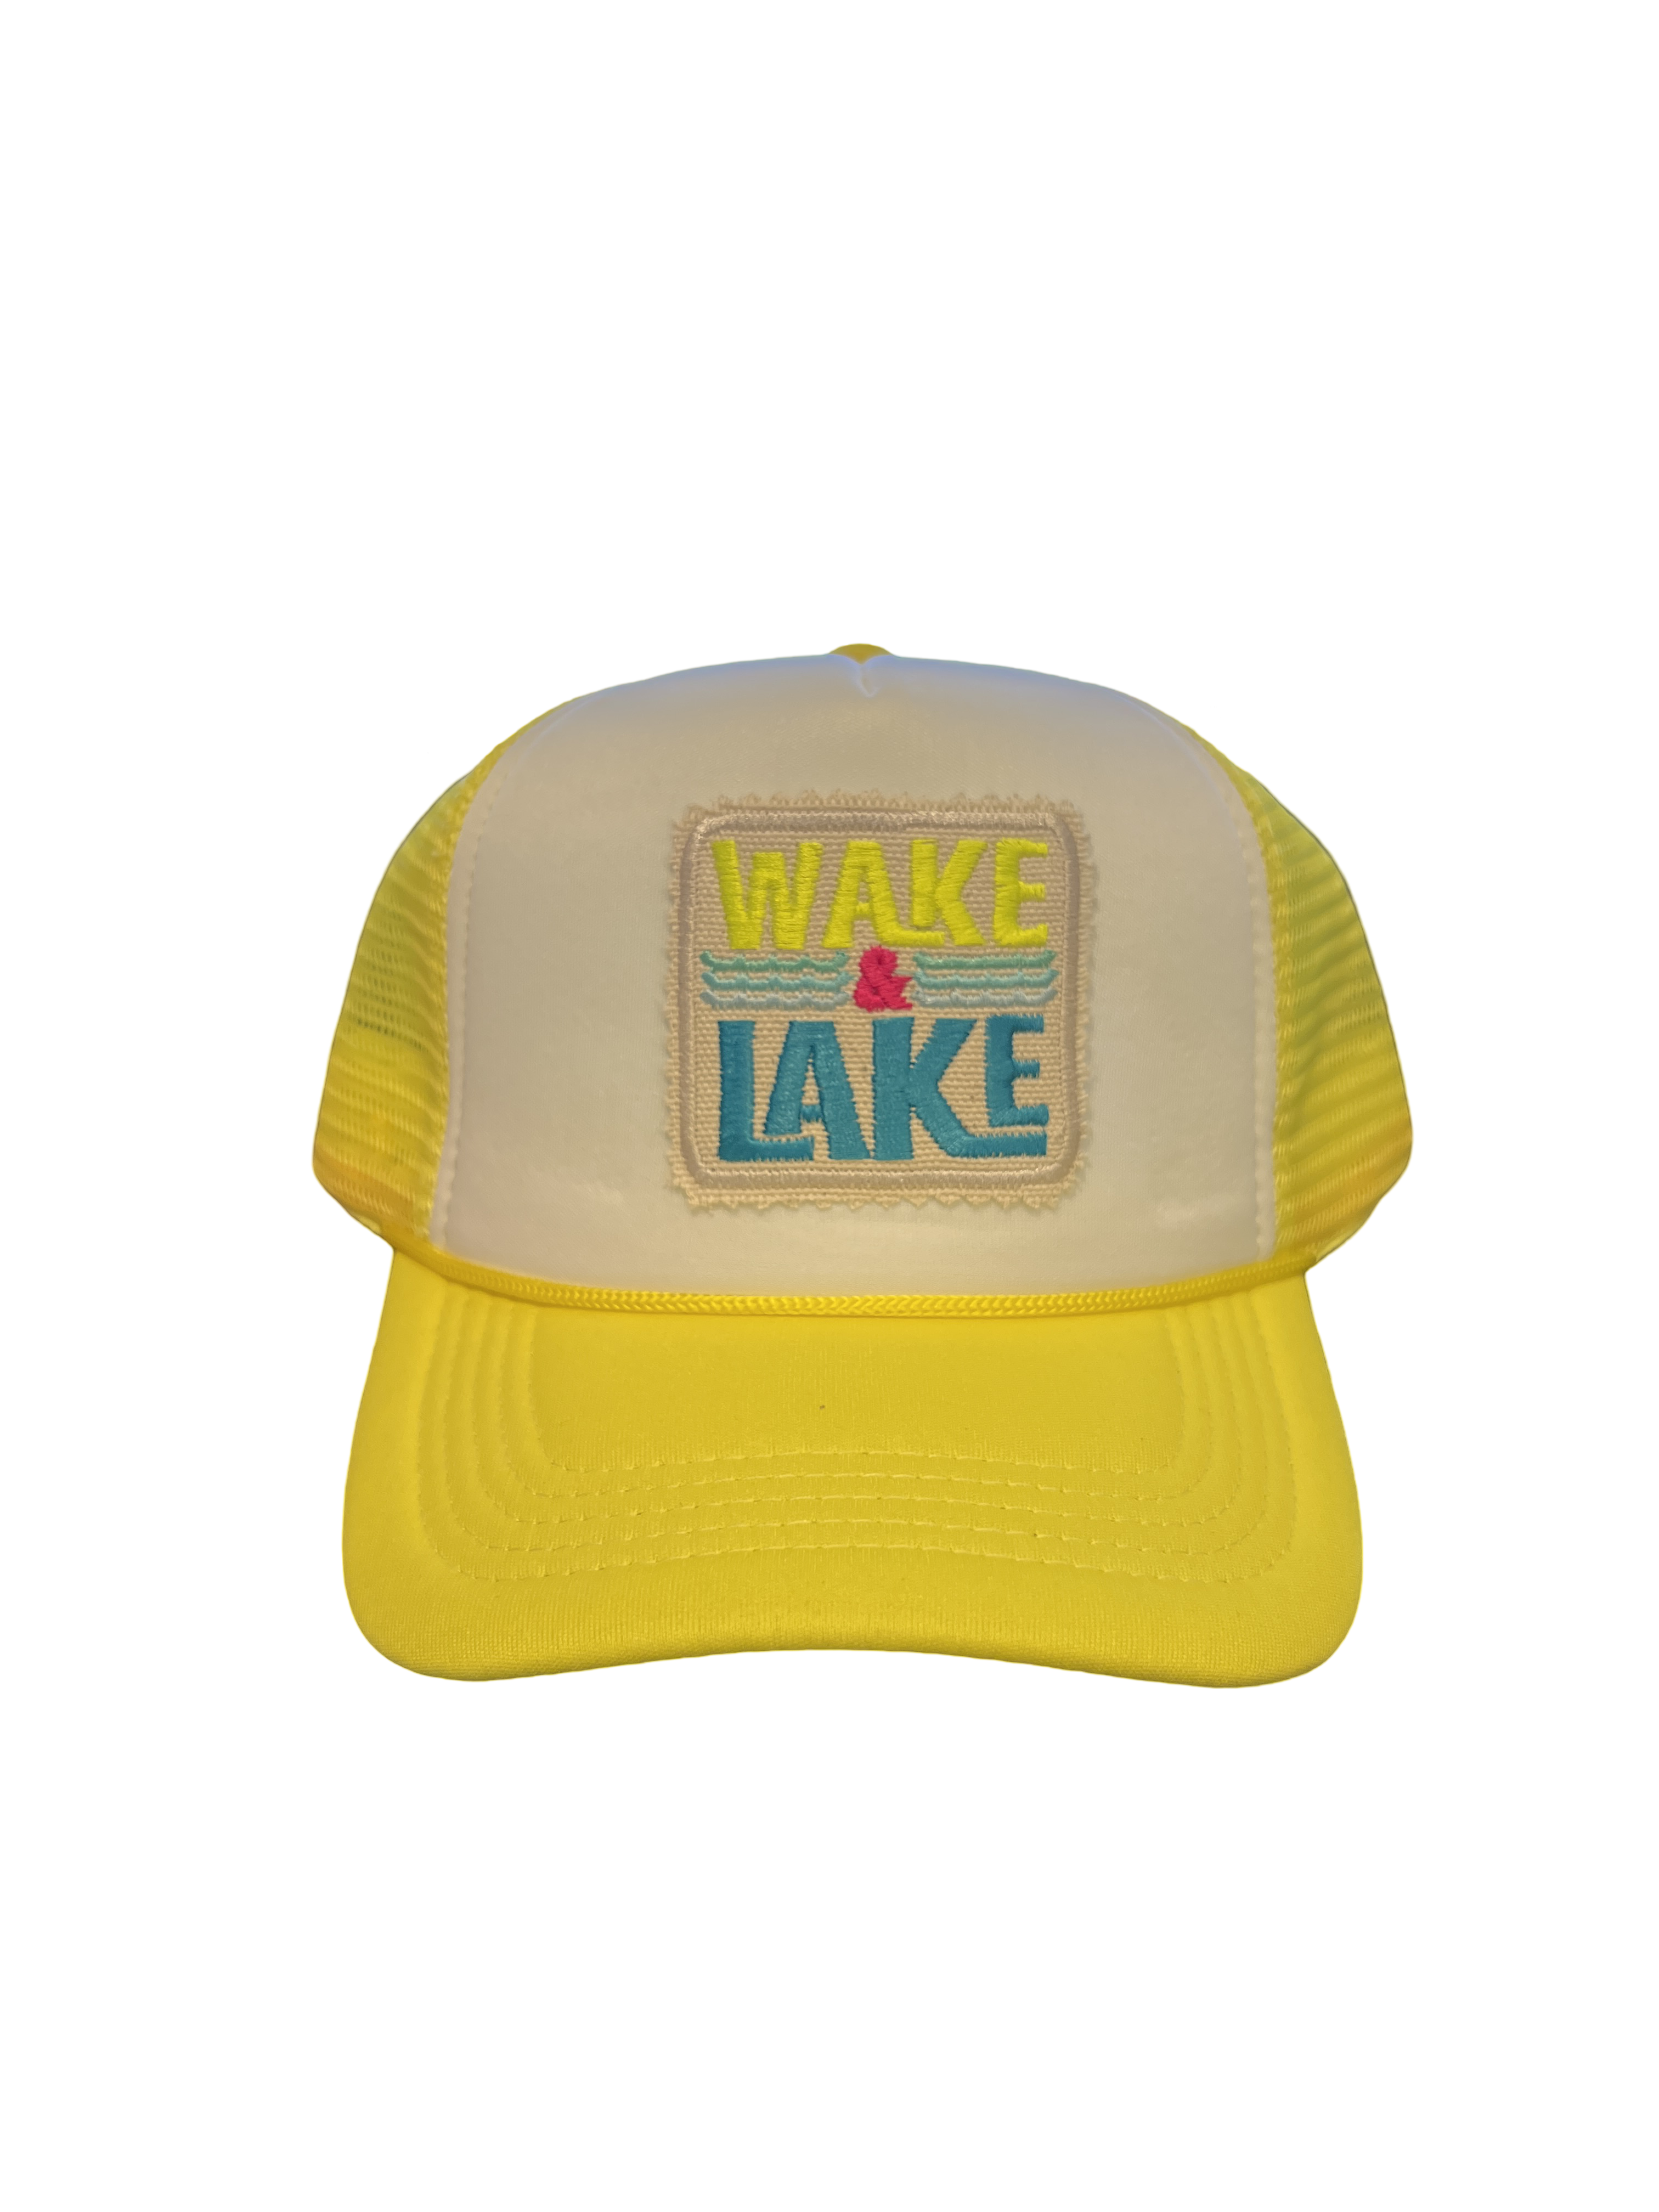 Foam Trucker Hat "Wake & Lake"